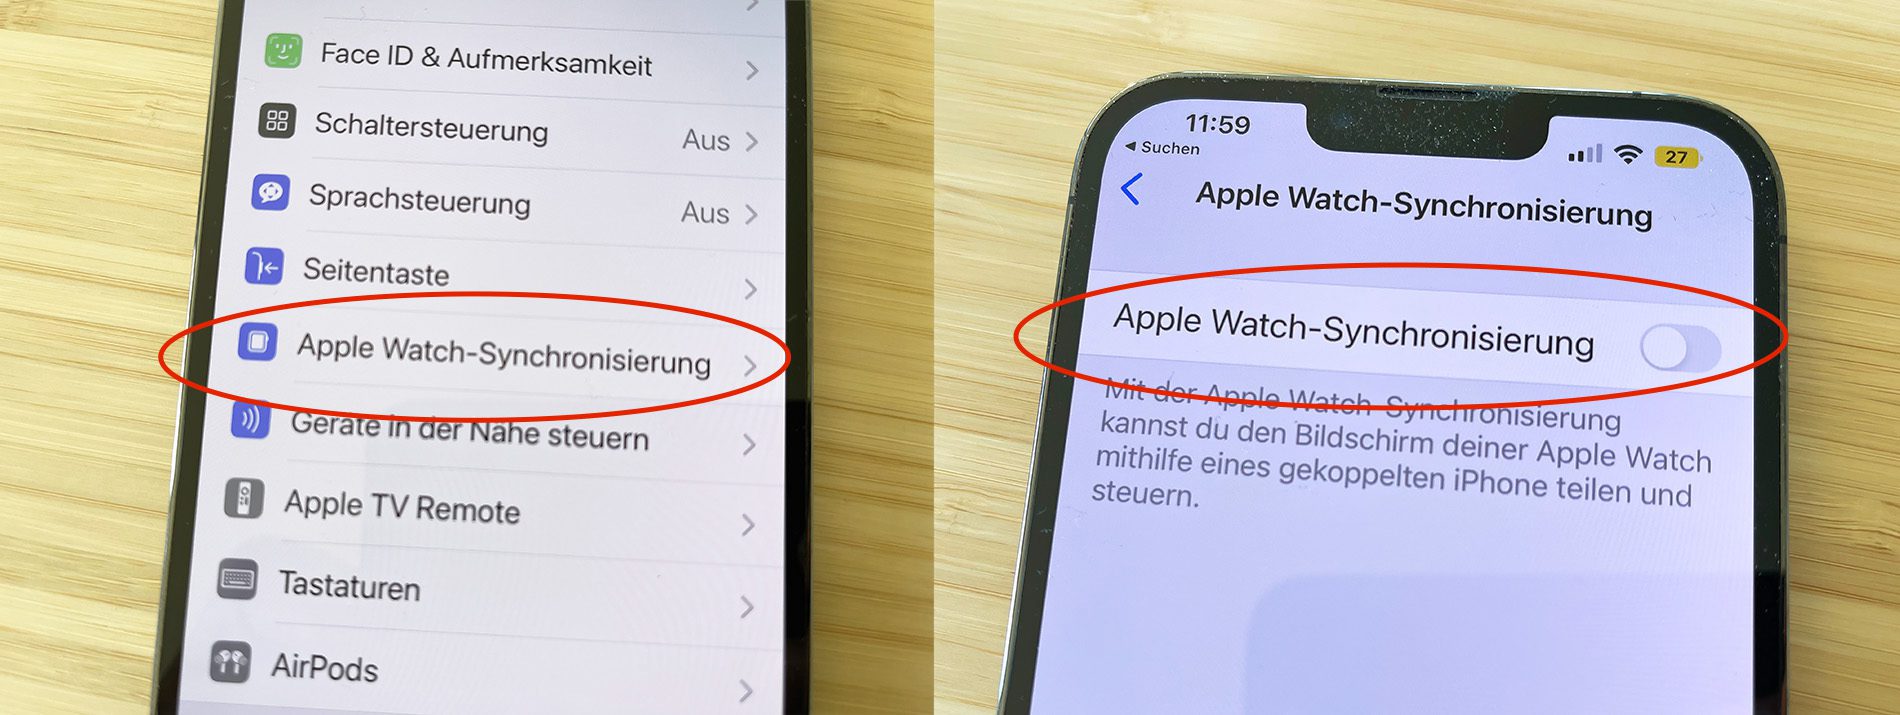 Hier sieht man, wo man die Funktion aktiviert, umdie Synchronisierung zwischen Apple Watch und das iPhone zu synchronisieren (Fotos: Sir Apfelot).